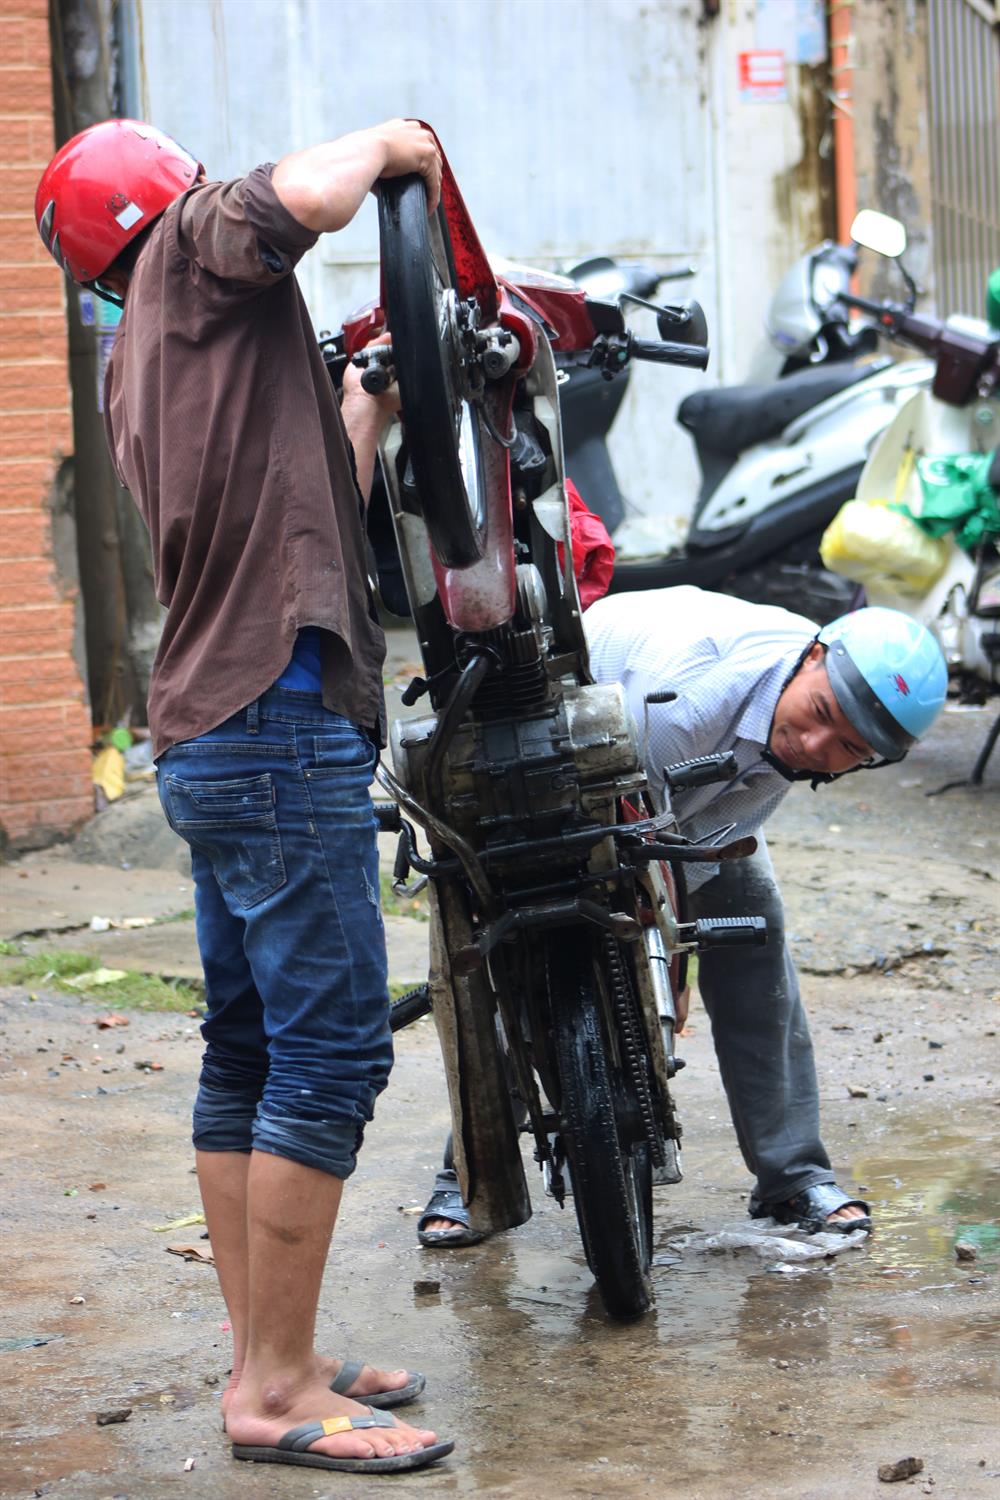 Hai anh em hỗ trợ nhau khắc phục cheiecs xe bị chết máy trên đường Nguyễn Hữu Cảnh. Ảnh: Trường Sơn